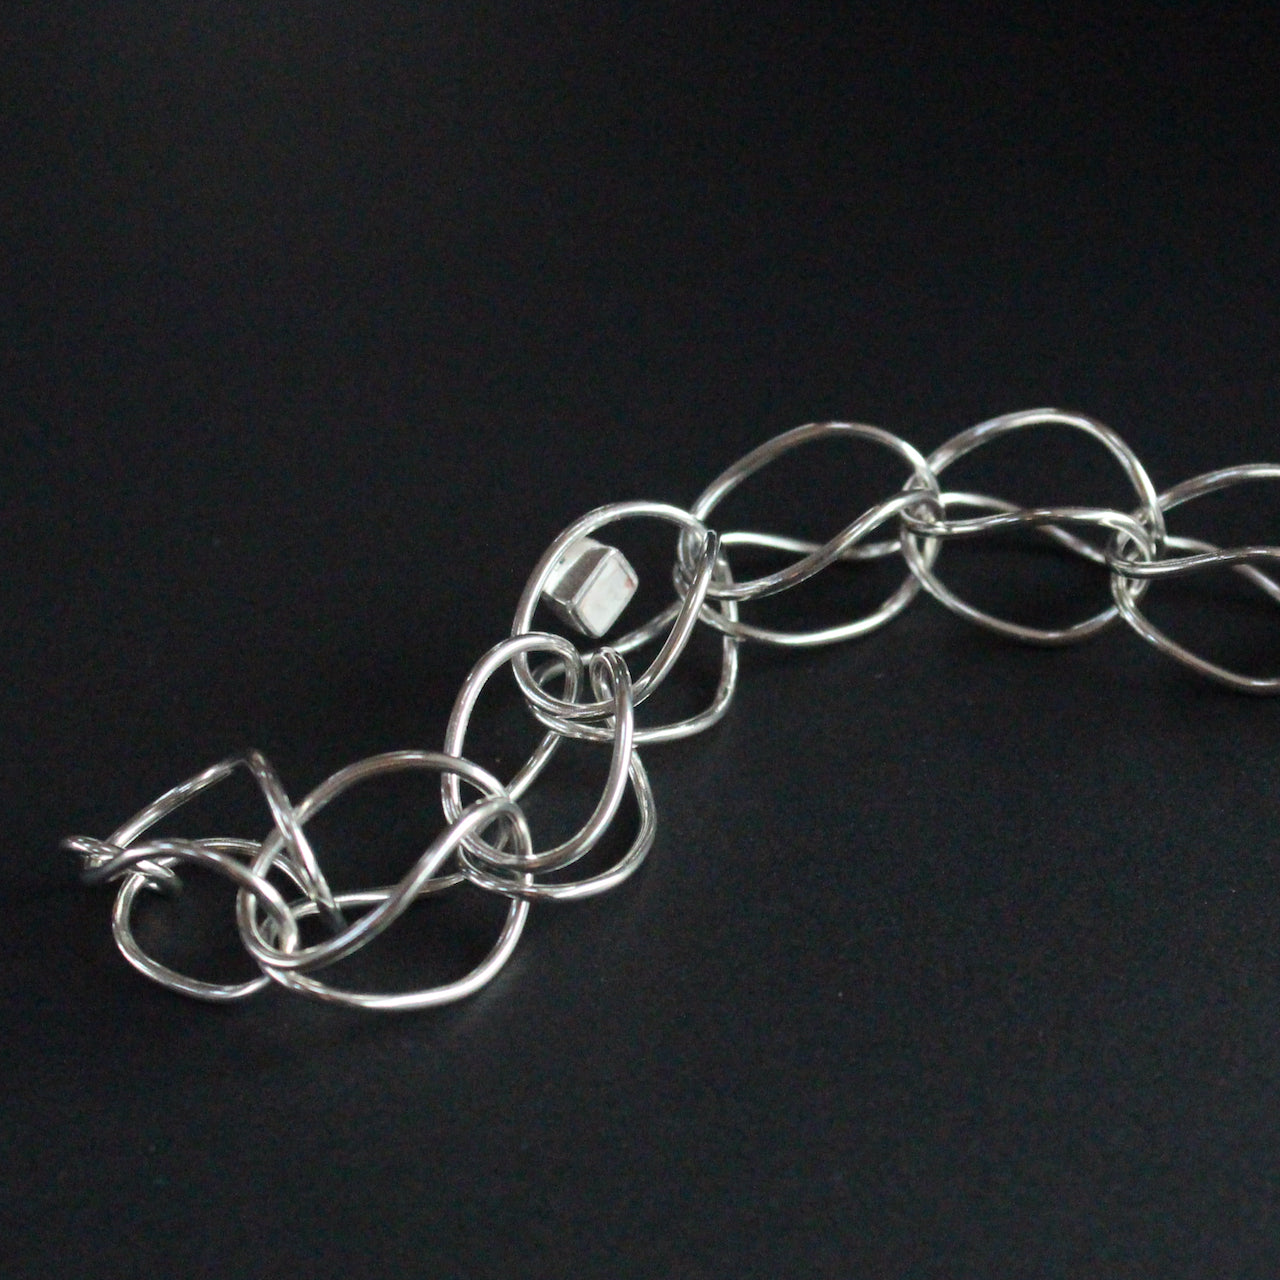 Sterling silver loop in loop chain bracelet by UK artist Amy Stringer